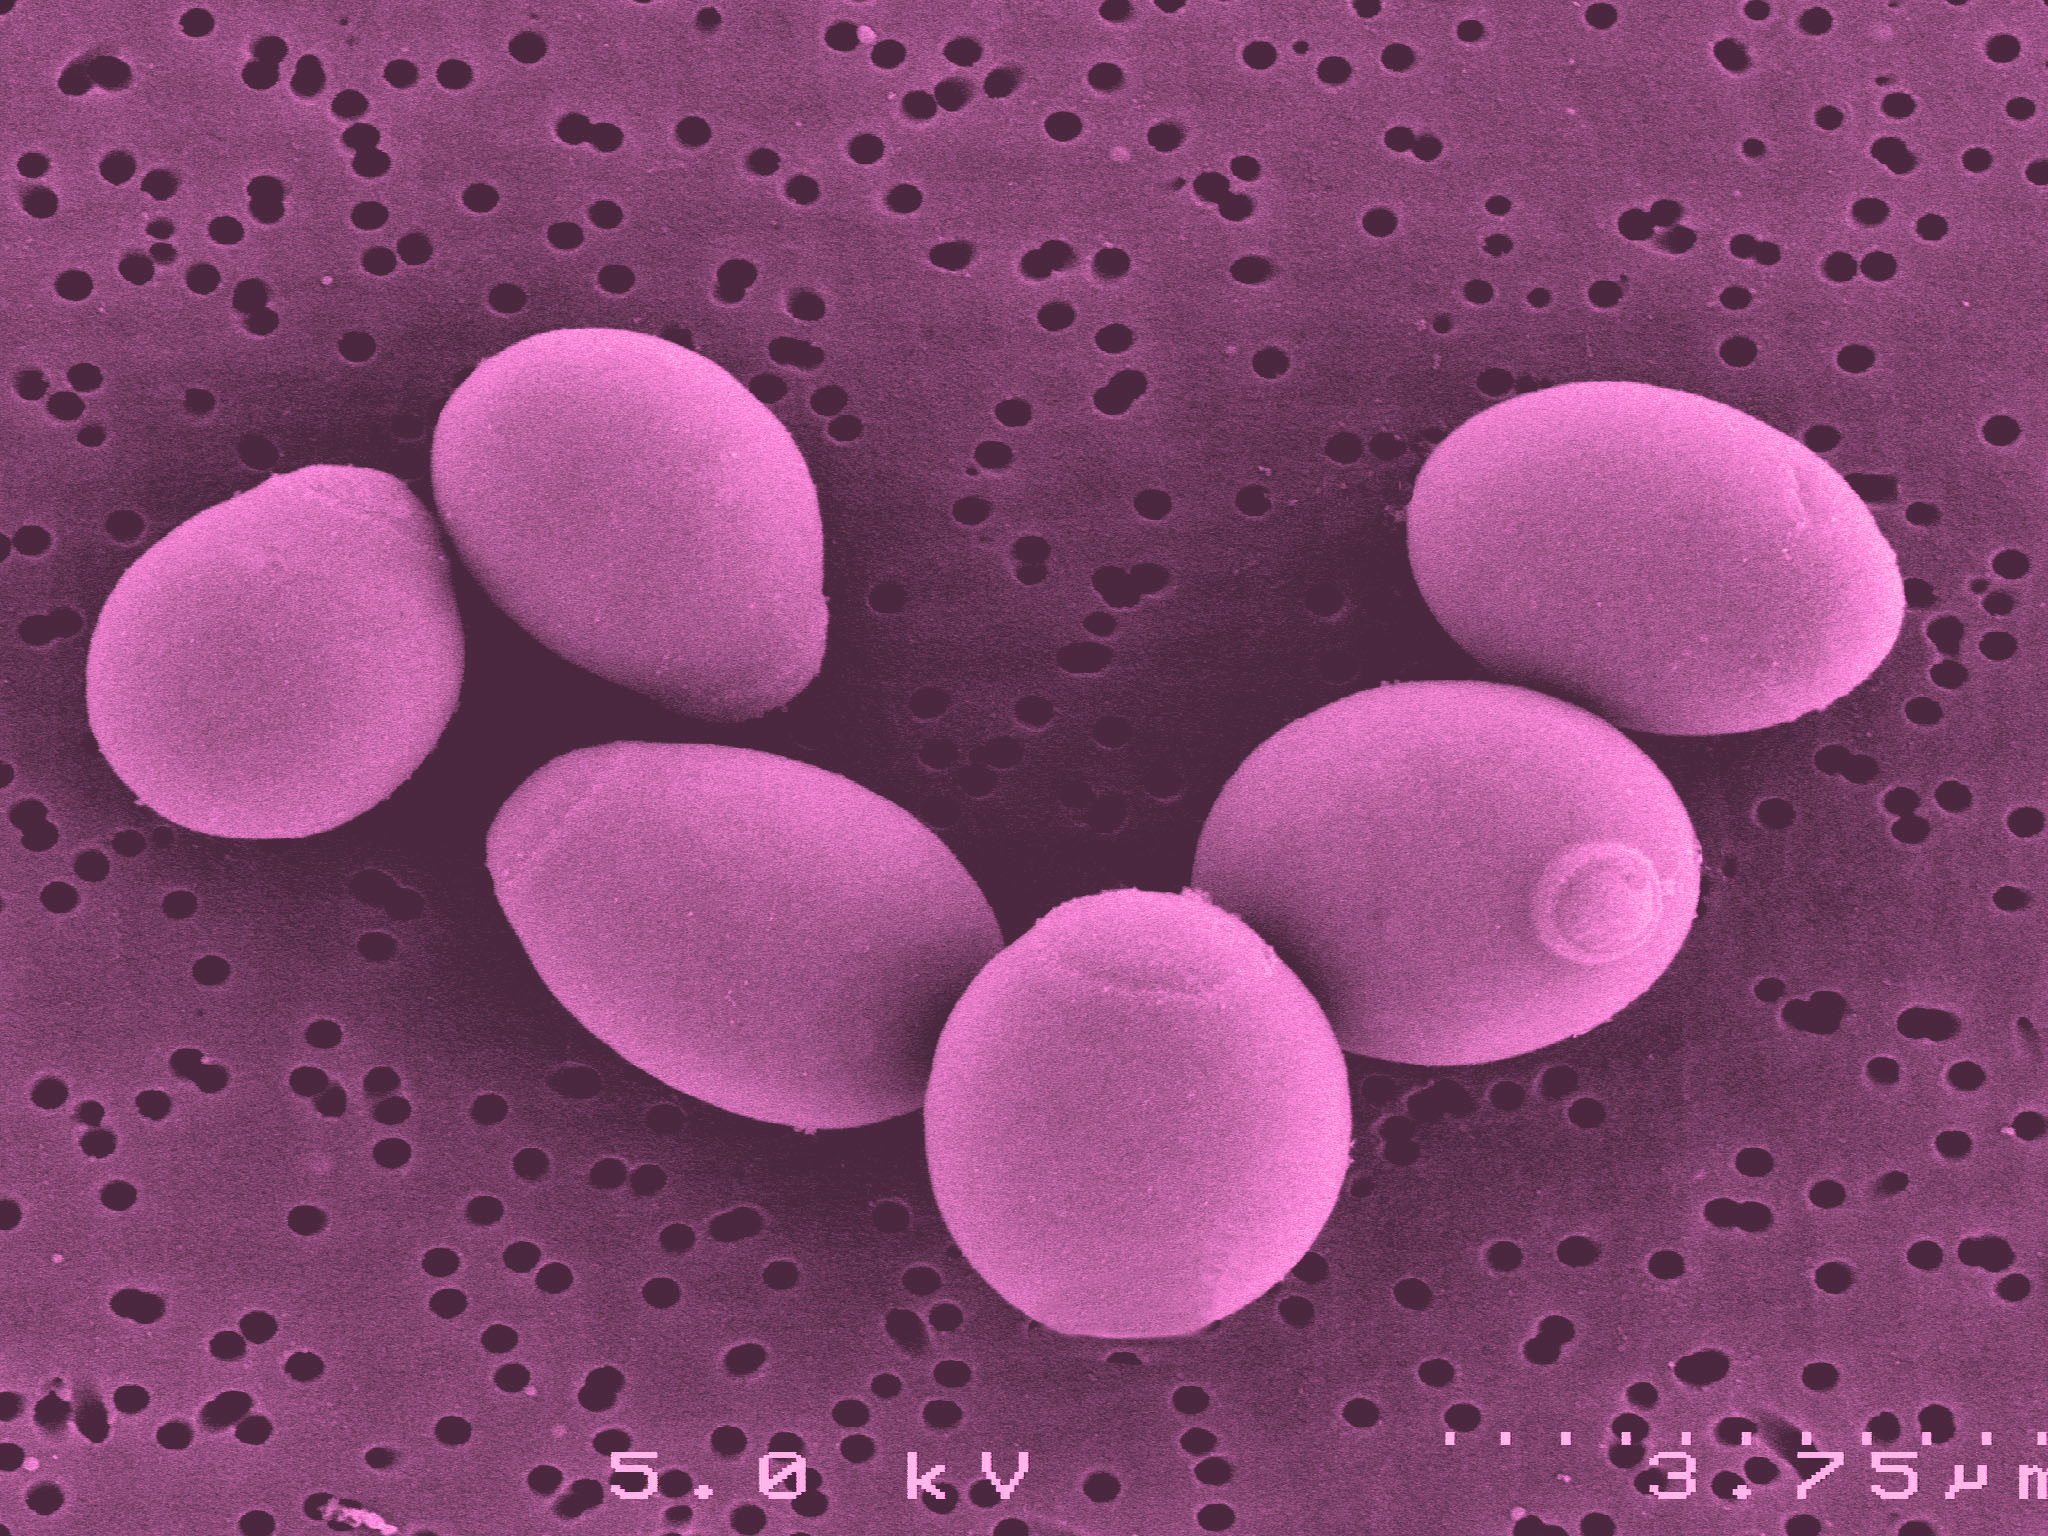 Saccharomyces boulardii a Noster ProBiotics ingredient – Noster ProBiotics